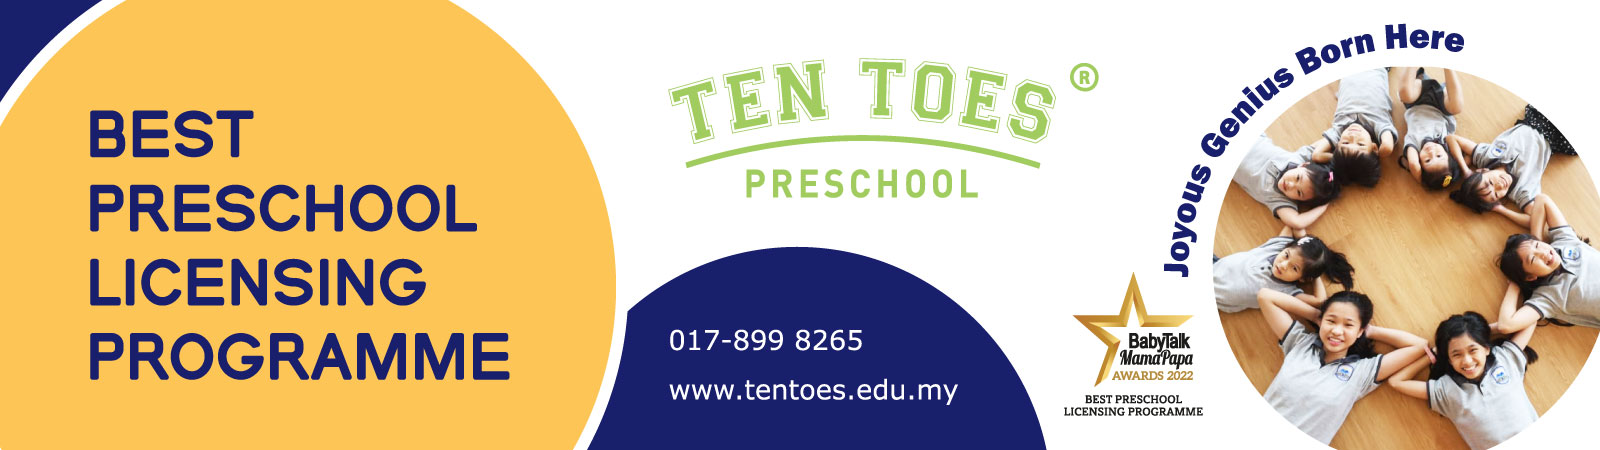 Ten Toes Academy – Preschool Licensing Programme